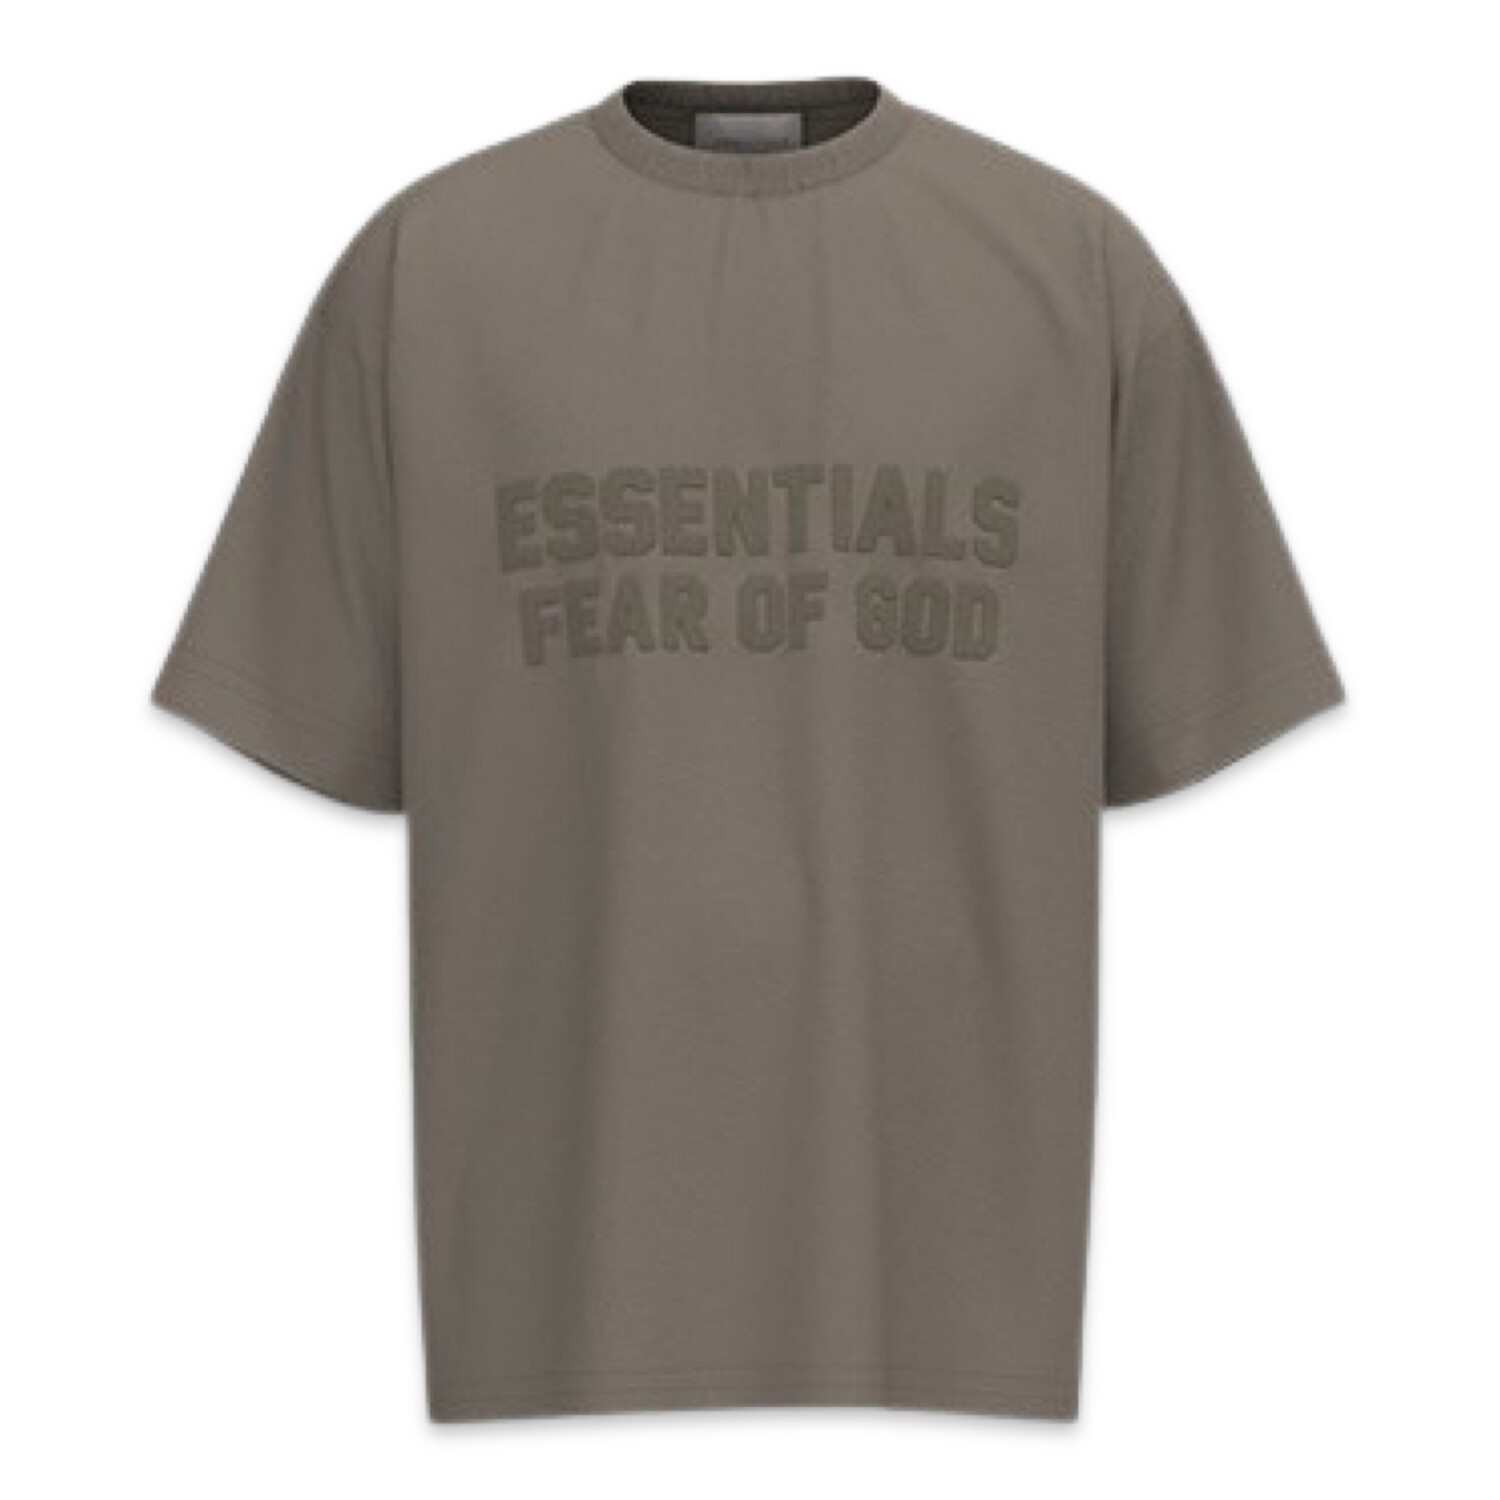 FEAR OF GOD Essentials SS2 T-shirt